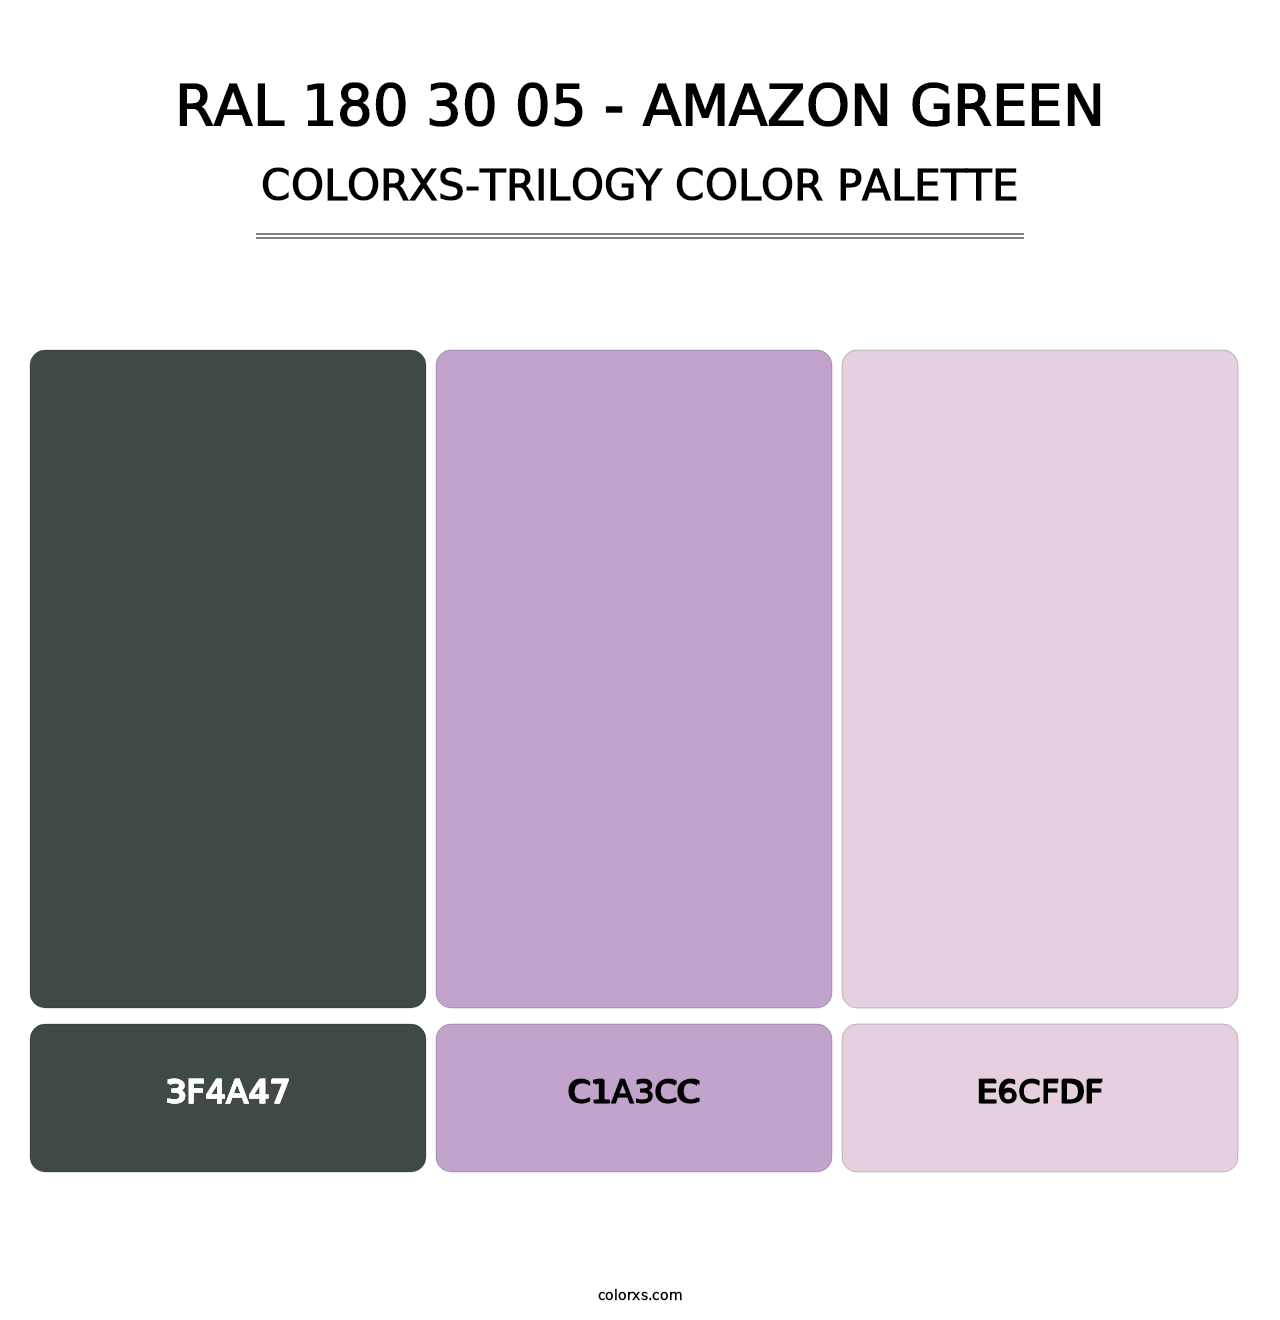 RAL 180 30 05 - Amazon Green - Colorxs Trilogy Palette